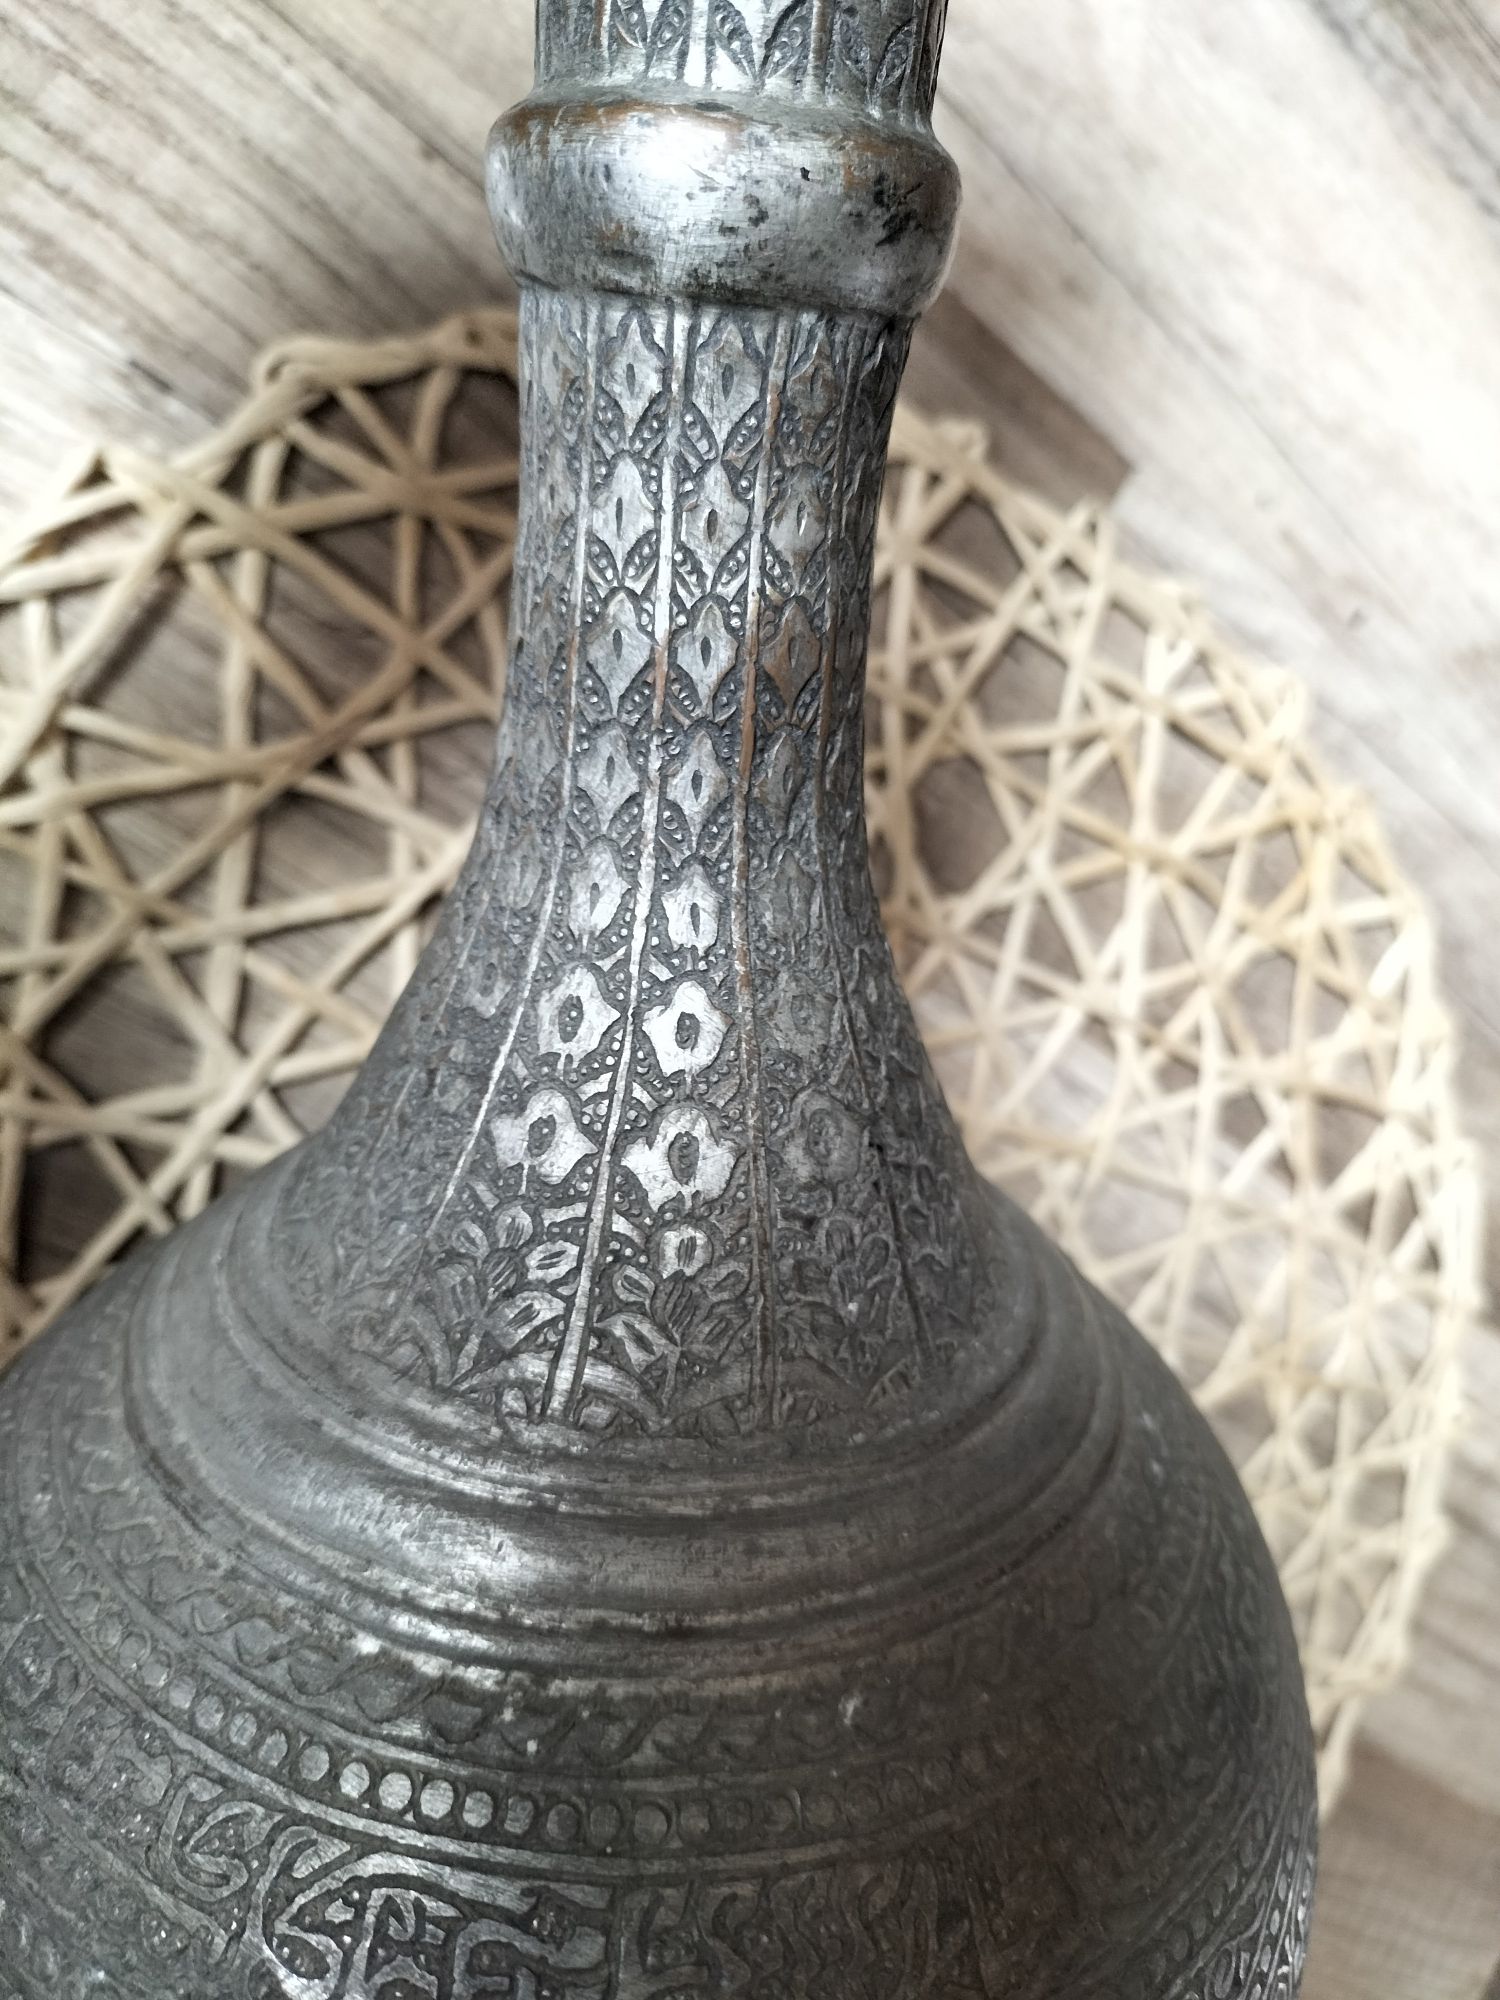 Stary orientalny wazon naczynie mosiężne miedziane